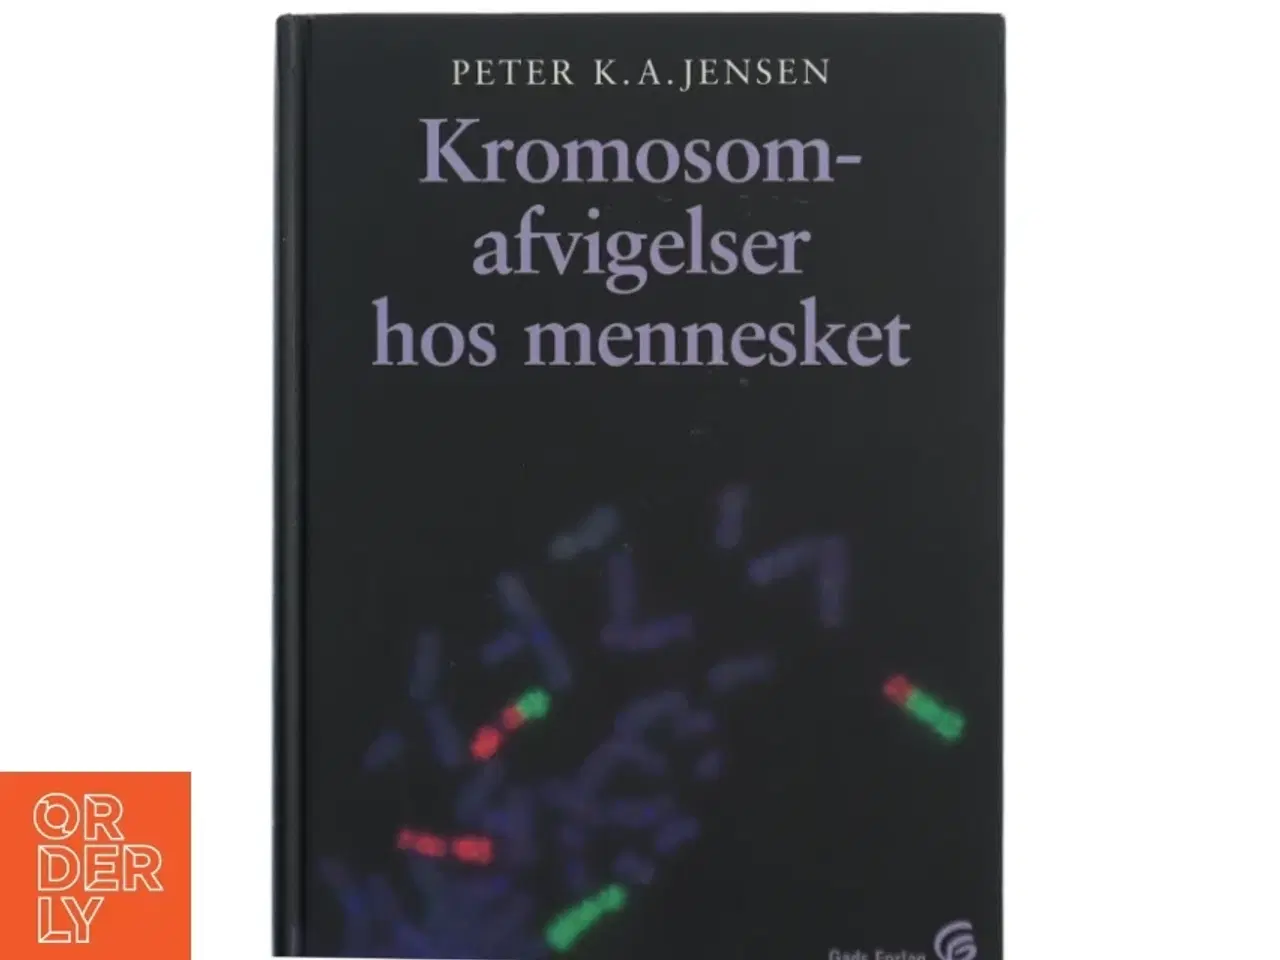 Billede 1 - Kromosomafvigelser hos mennesket af Peter K. A. Jensen (f. 1951) (Bog)